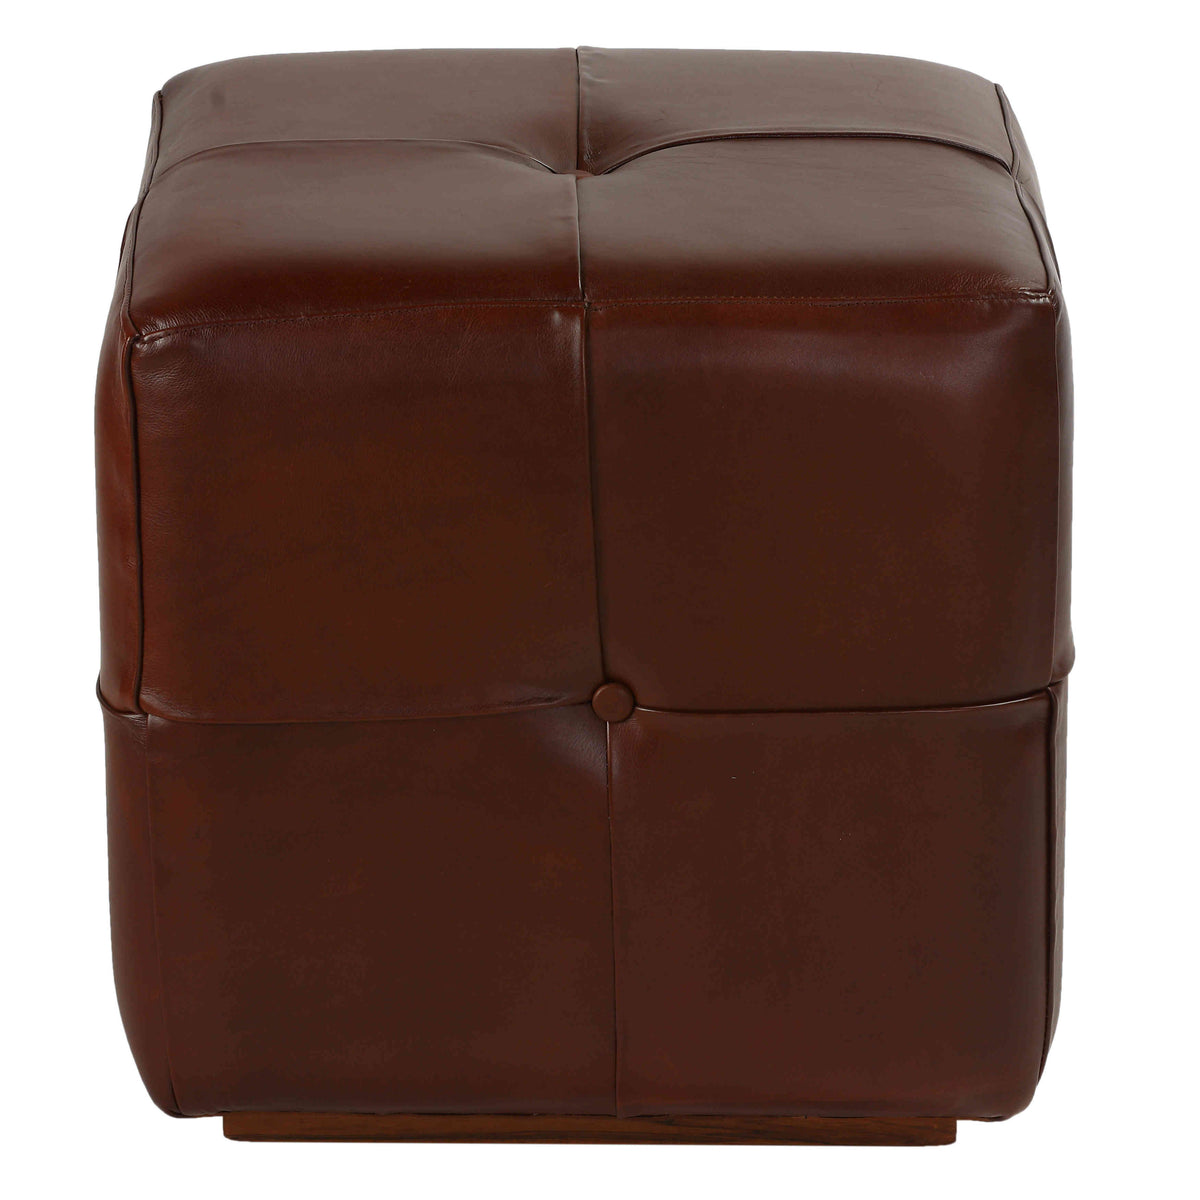 Bare Decor Chesterfield Square Ottoman, Genuine 100% Leather, Brown